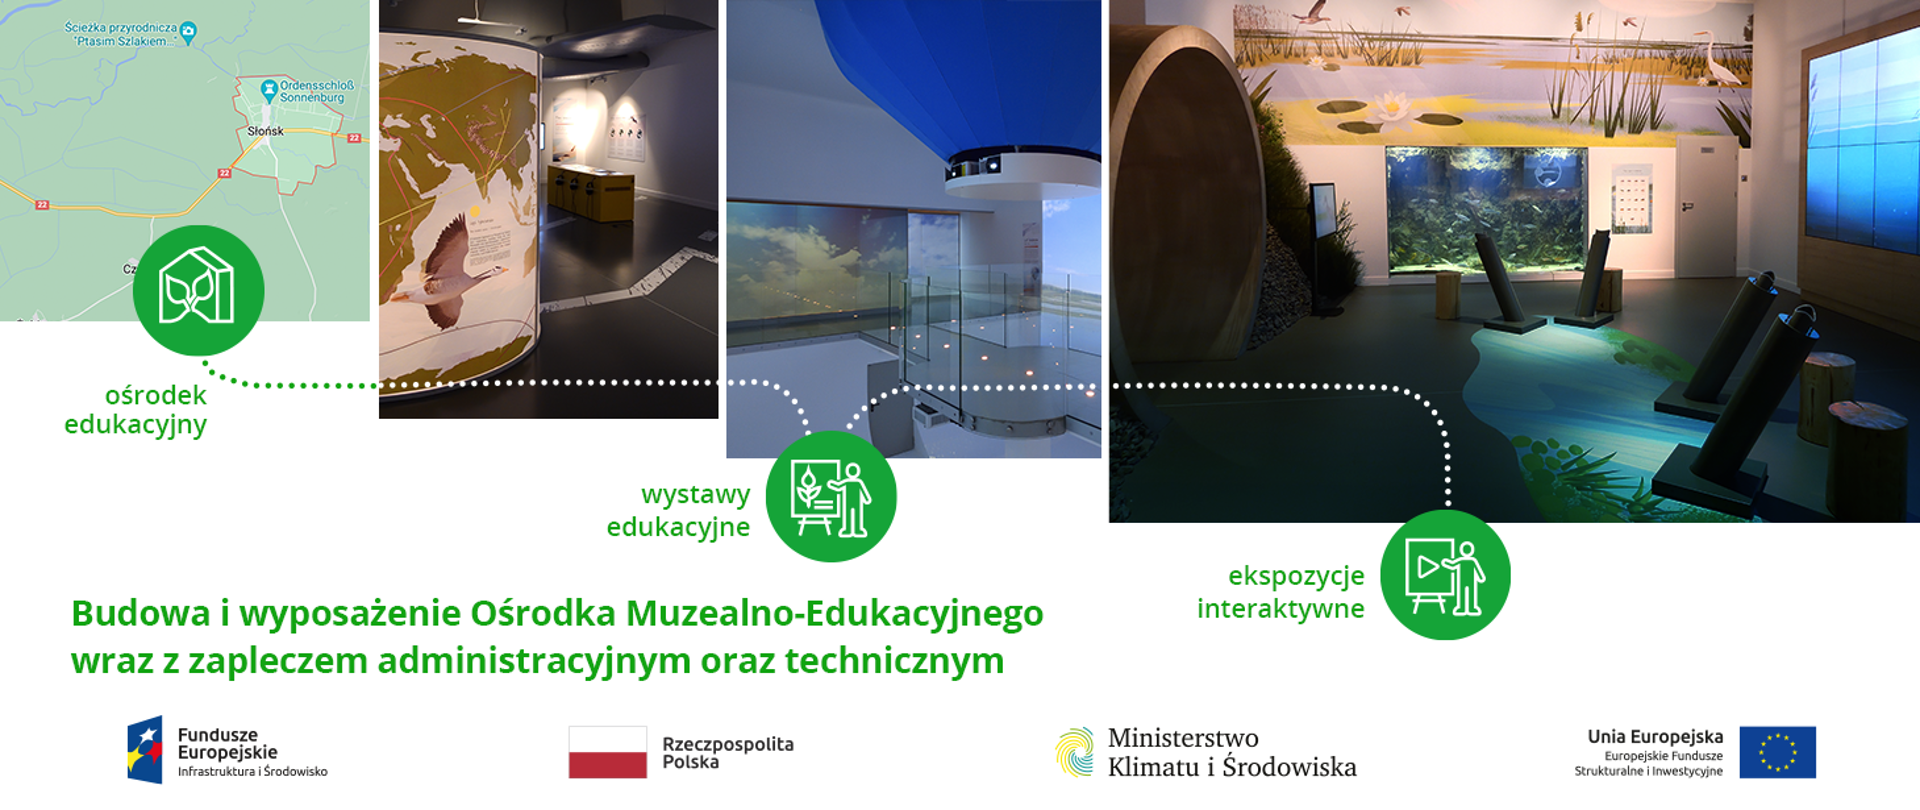 Budowa i wyposażenie Ośrodka Muzealno-Edukacyjnego wraz z zapleczem administracyjnym oraz technicznym